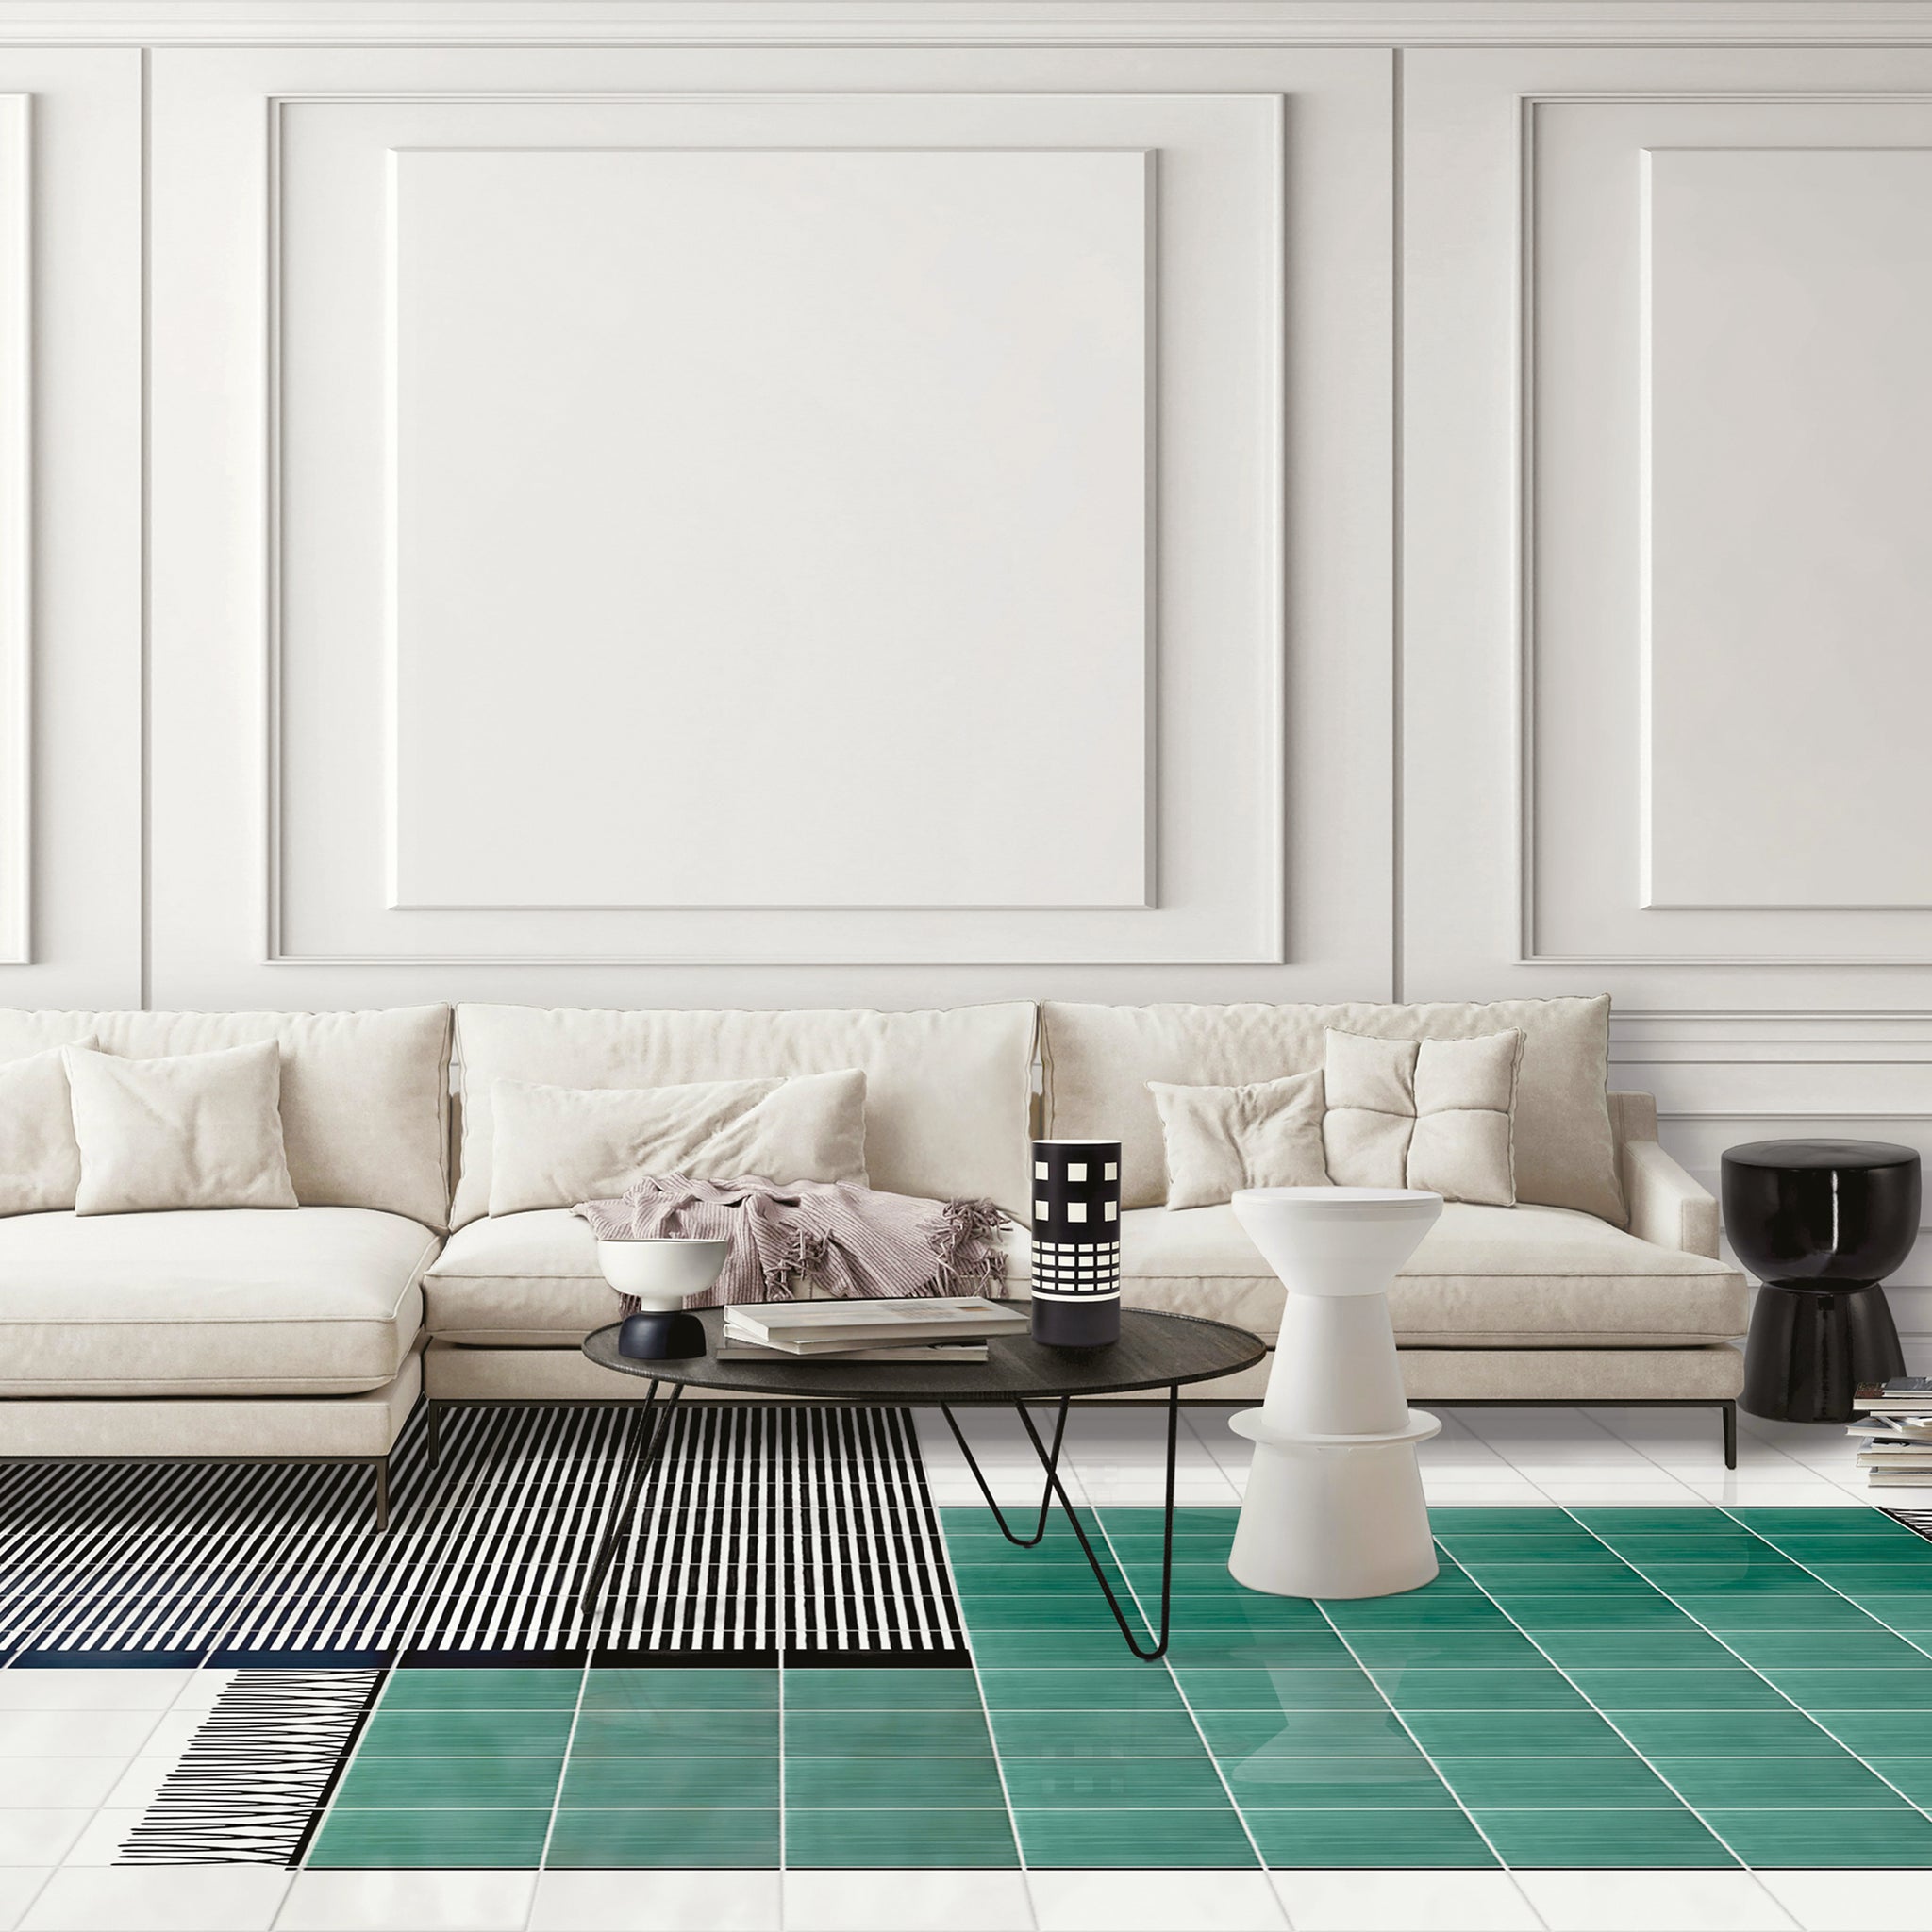 Carpet Total Green Ceramic Composition by Giuliano Andrea dell’Uva 120 X 80 - Alternative view 1